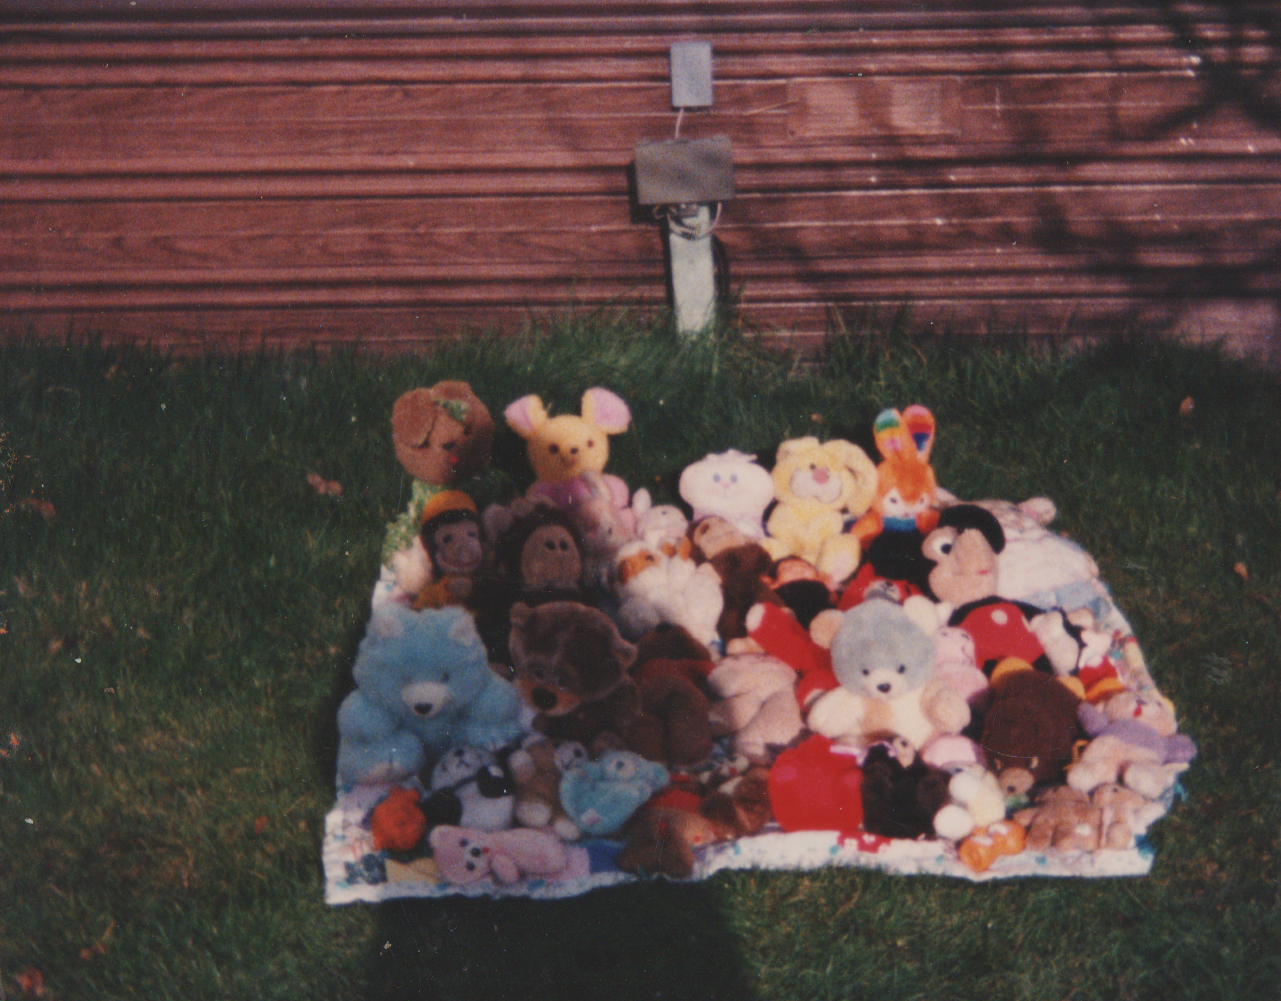 1991-12 - Stuffed animals, 163 Backyard, December.png